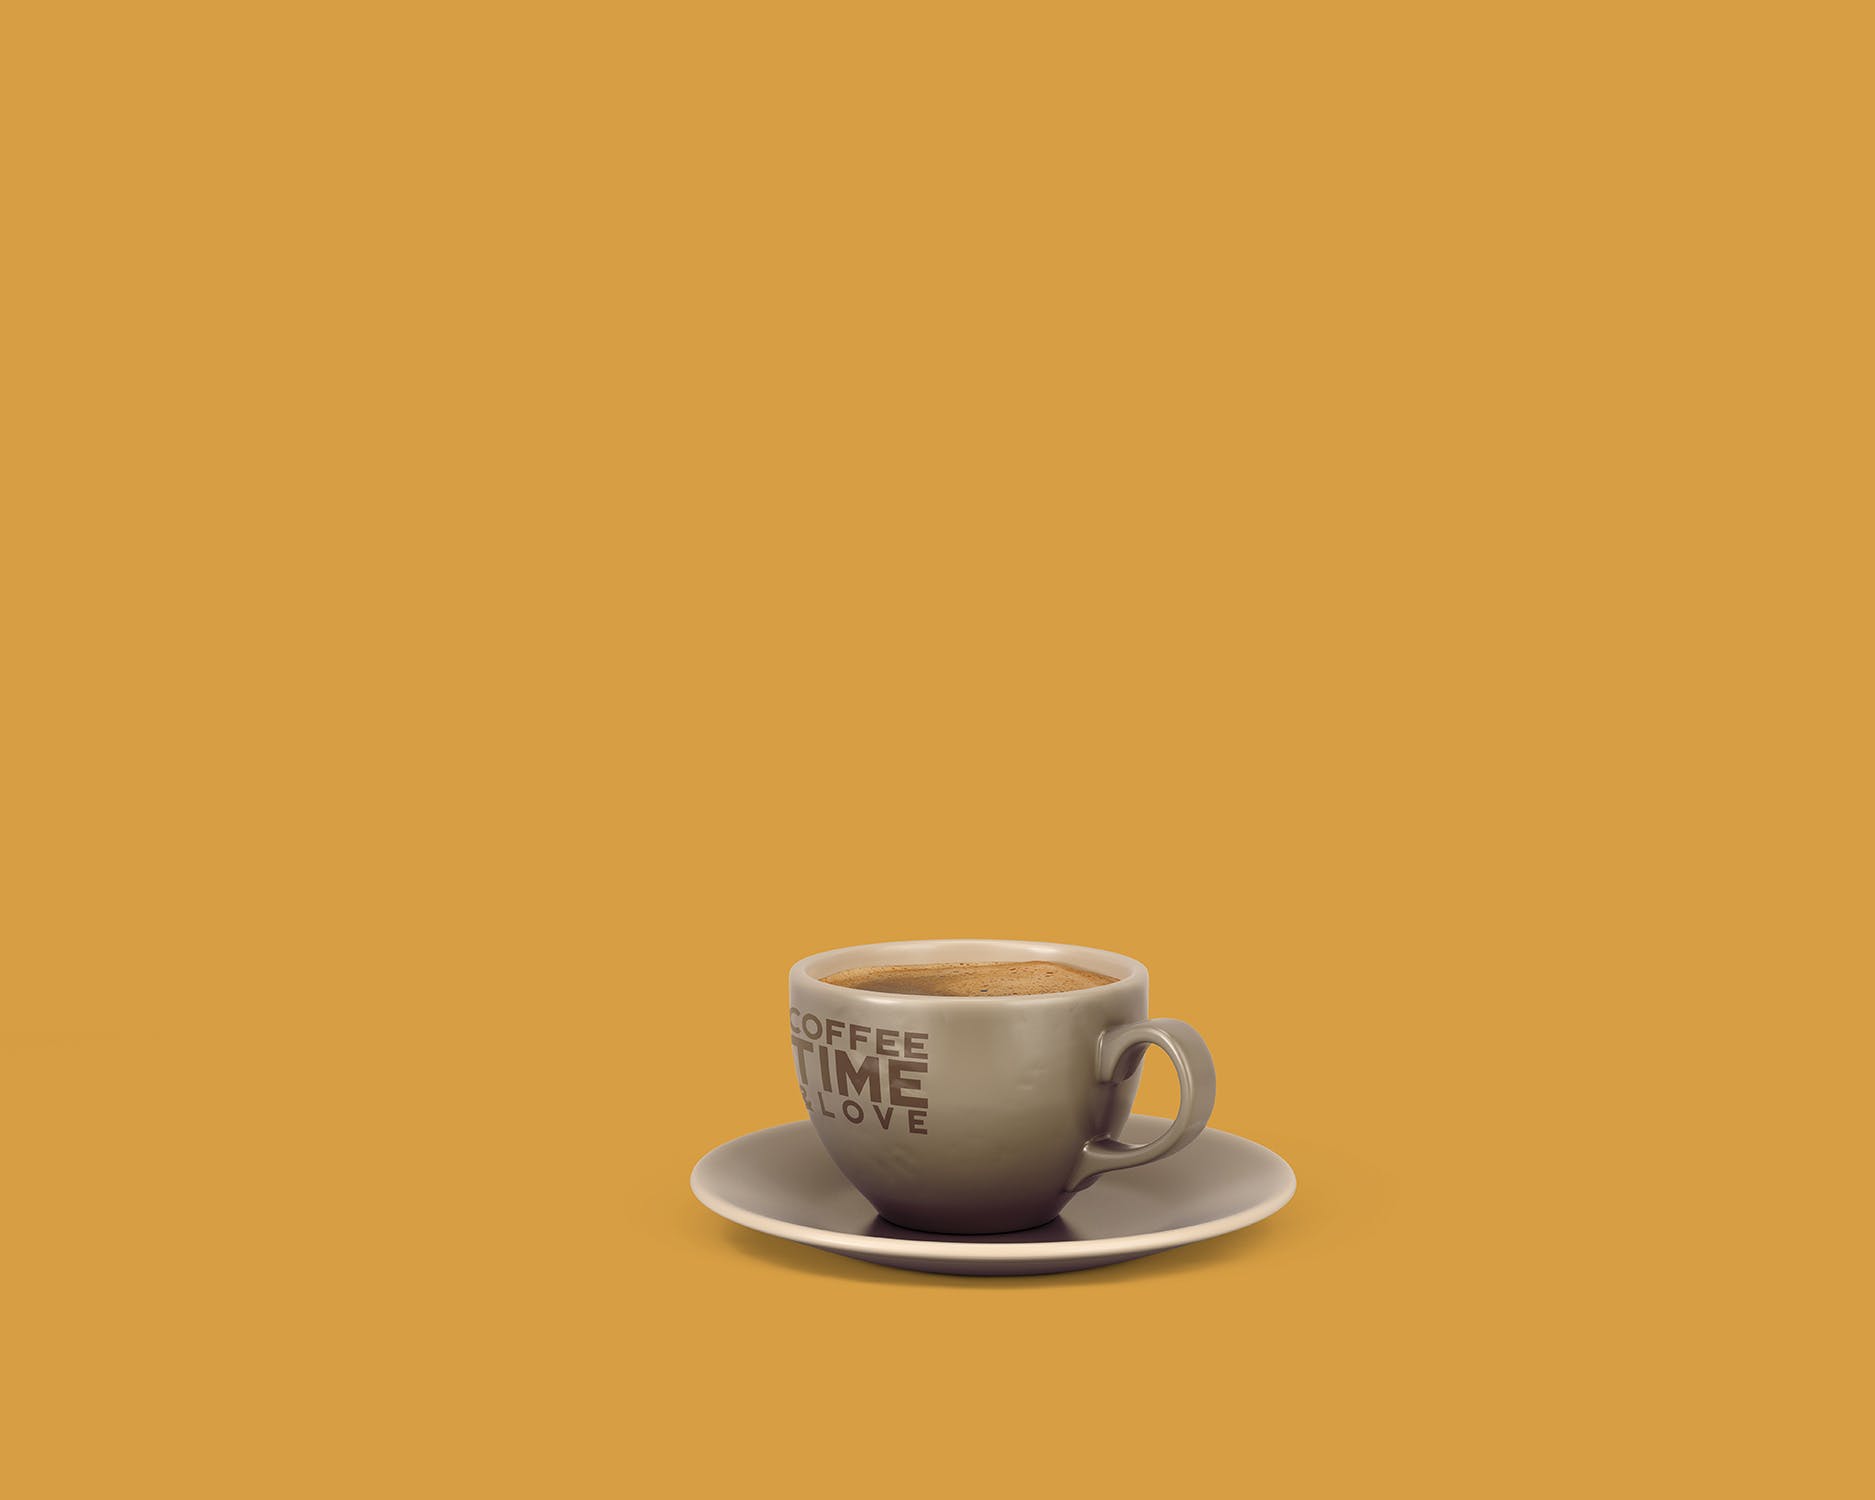 8个咖啡马克杯设计图素材库精选 8 Coffee Cup Mockups插图(8)